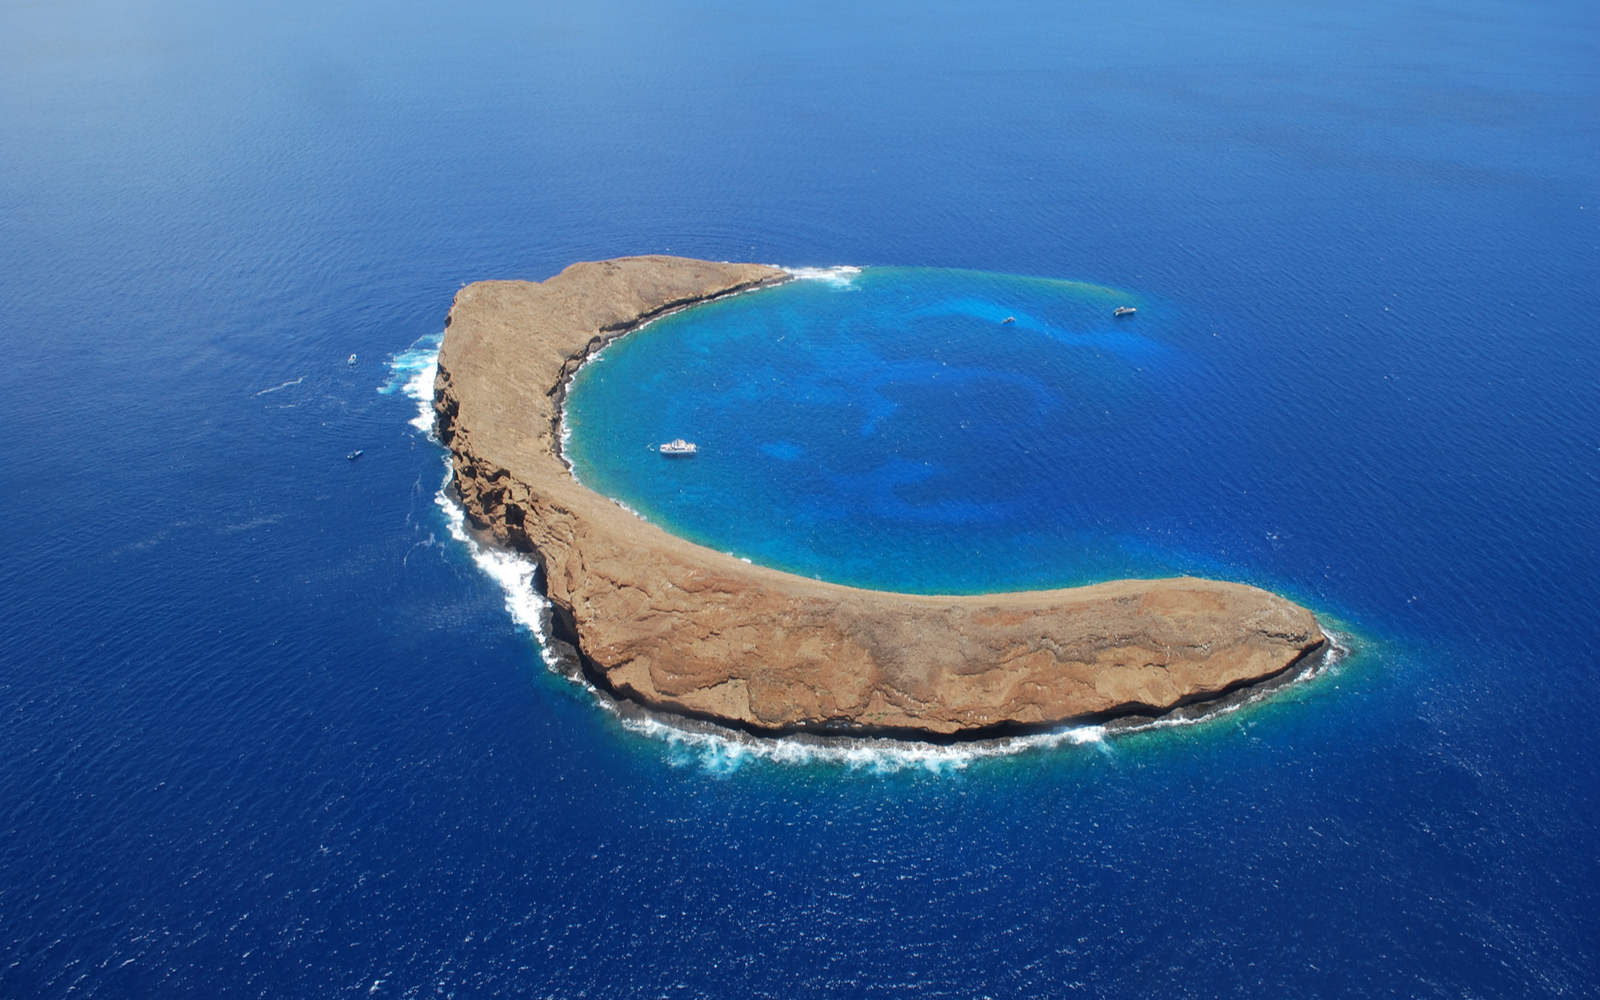 19 Best Snorkeling Spots in Hawaii in 2022